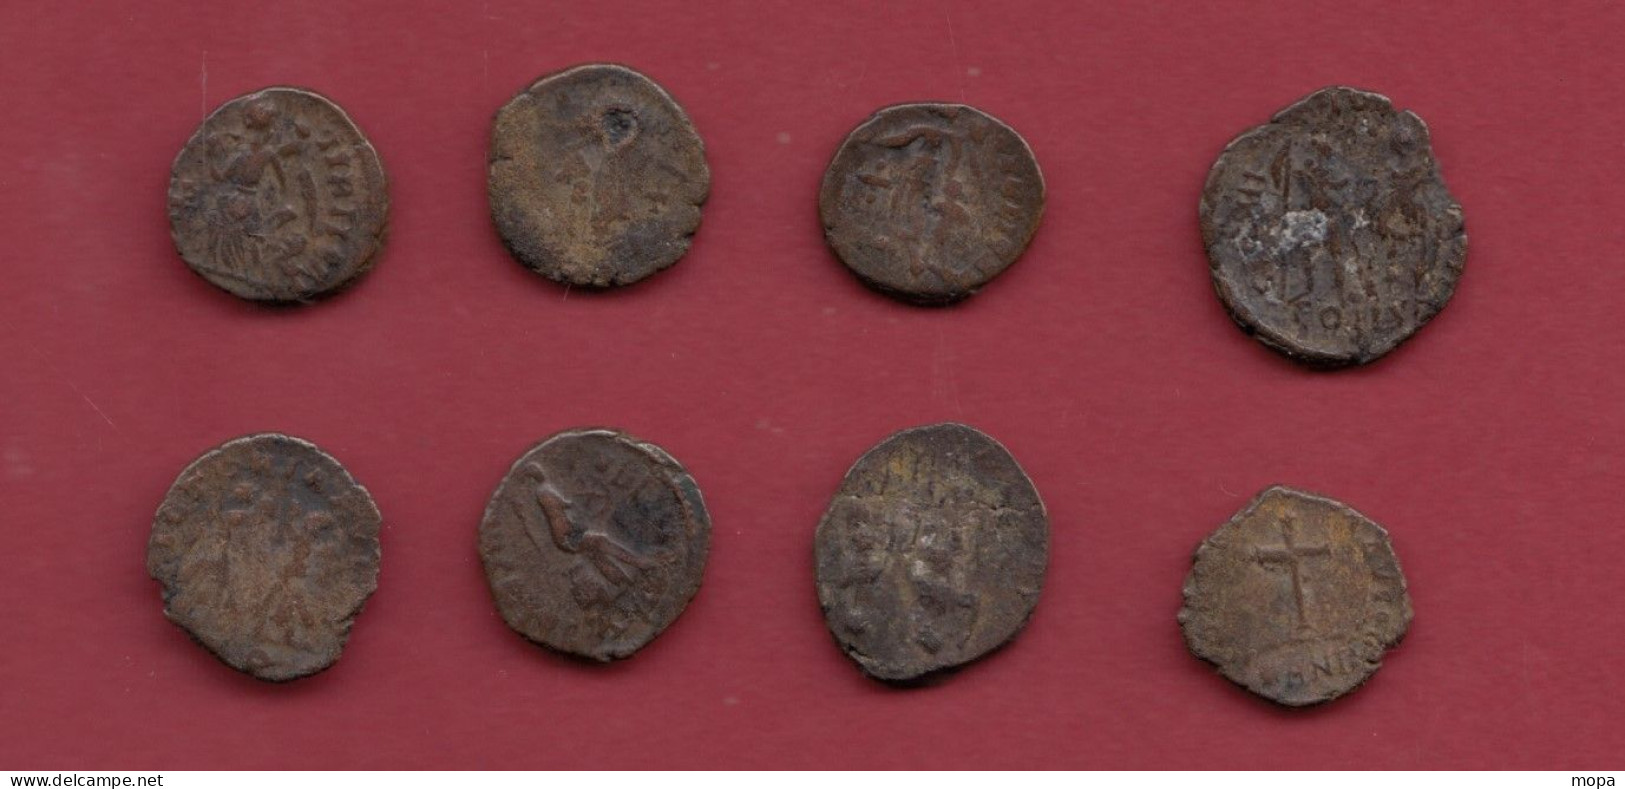 32 Pièces Romaines à identifier (Constantinus-Arcadius-Théodosius-Valentinien et à identifier ) dans l 'état